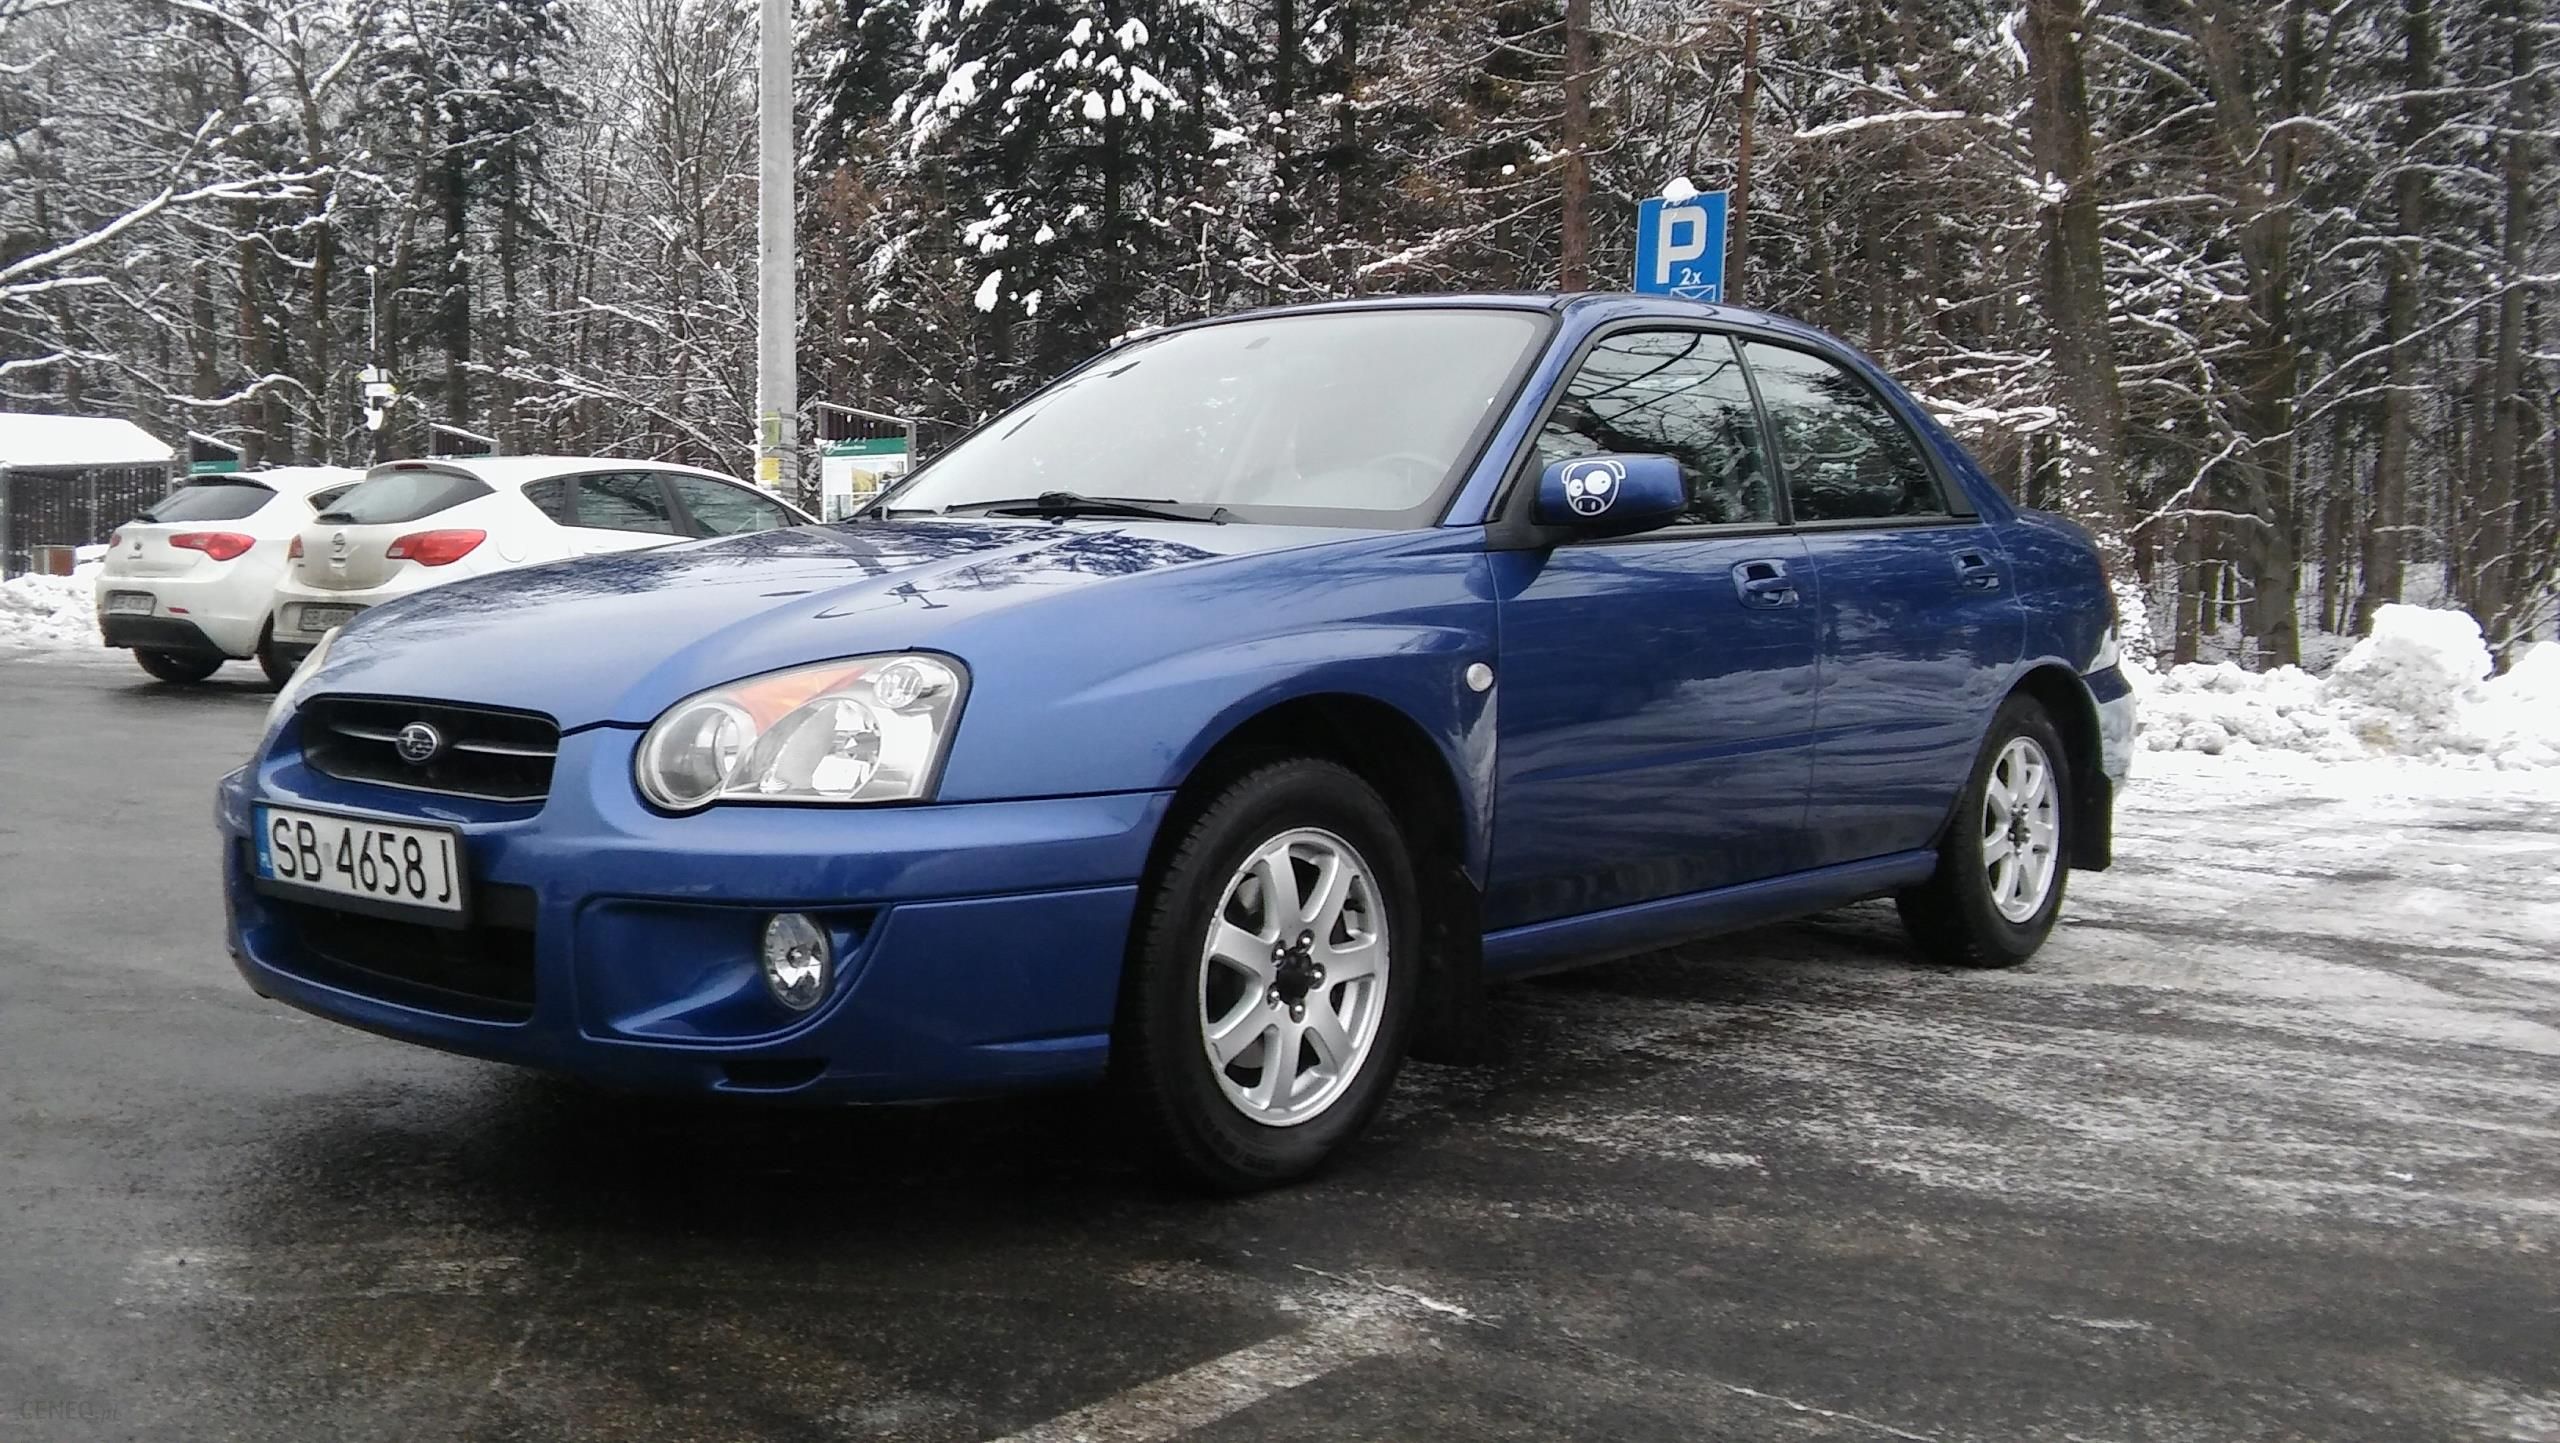 Subaru Impreza Gx 2.0 Lpg 4X4 - Opinie I Ceny Na Ceneo.pl